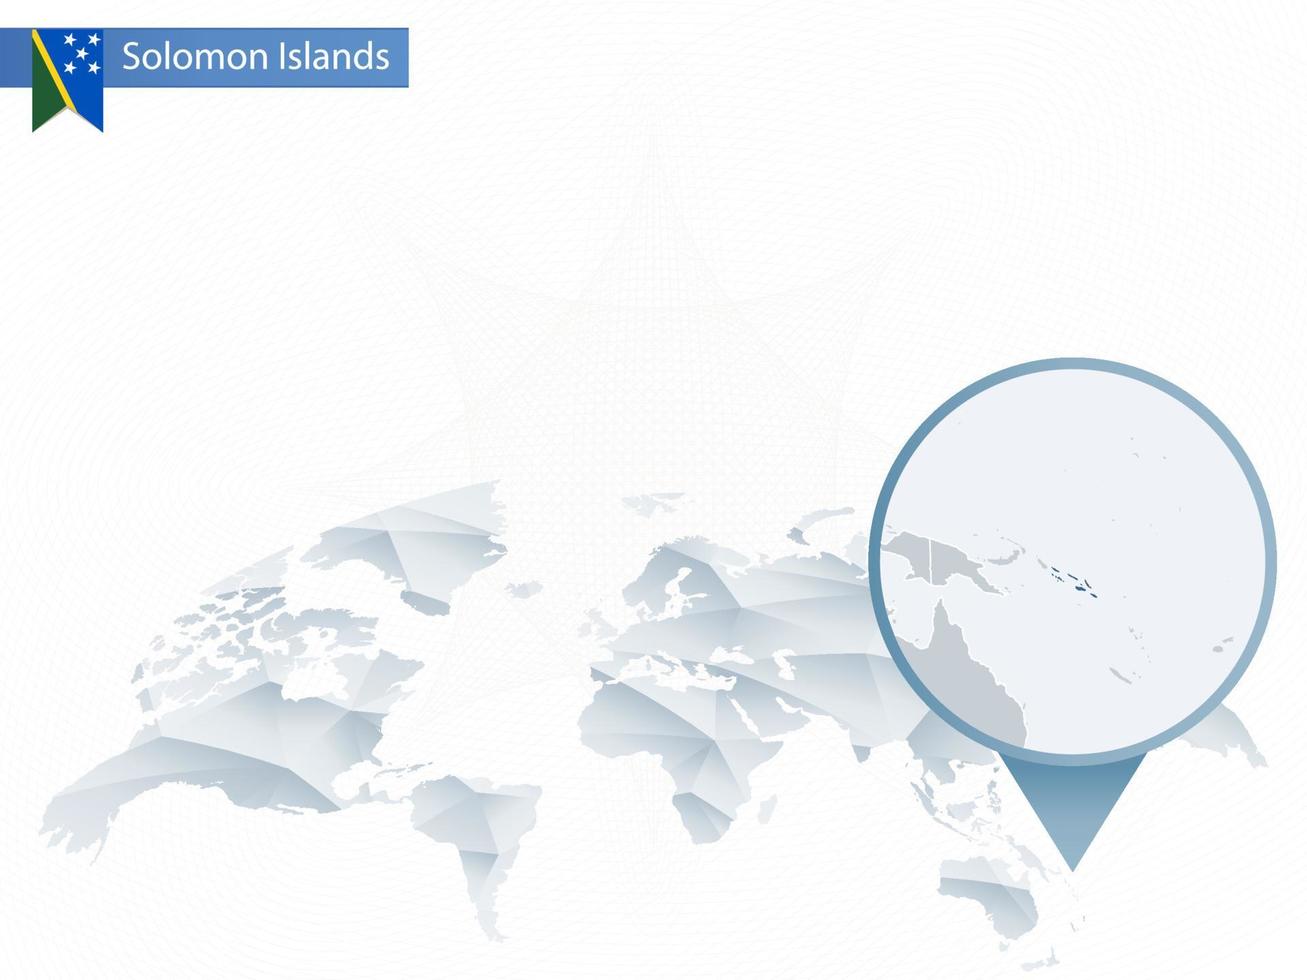 mappa del mondo arrotondata astratta con mappa dettagliata delle isole Salomone appuntata. vettore